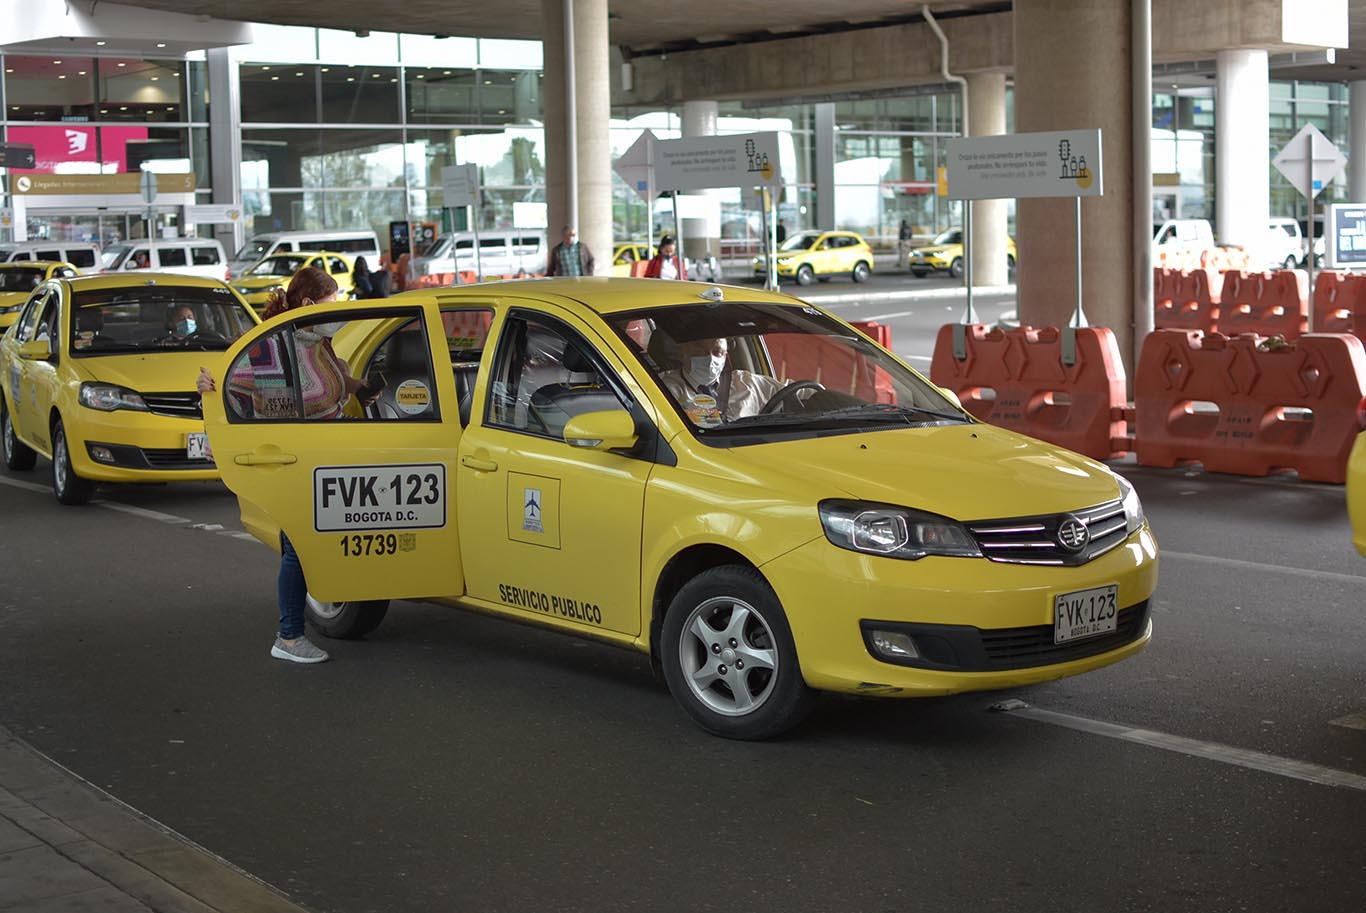 Taxis Libres anuncia promociones en su APP hoy 20 de Julio